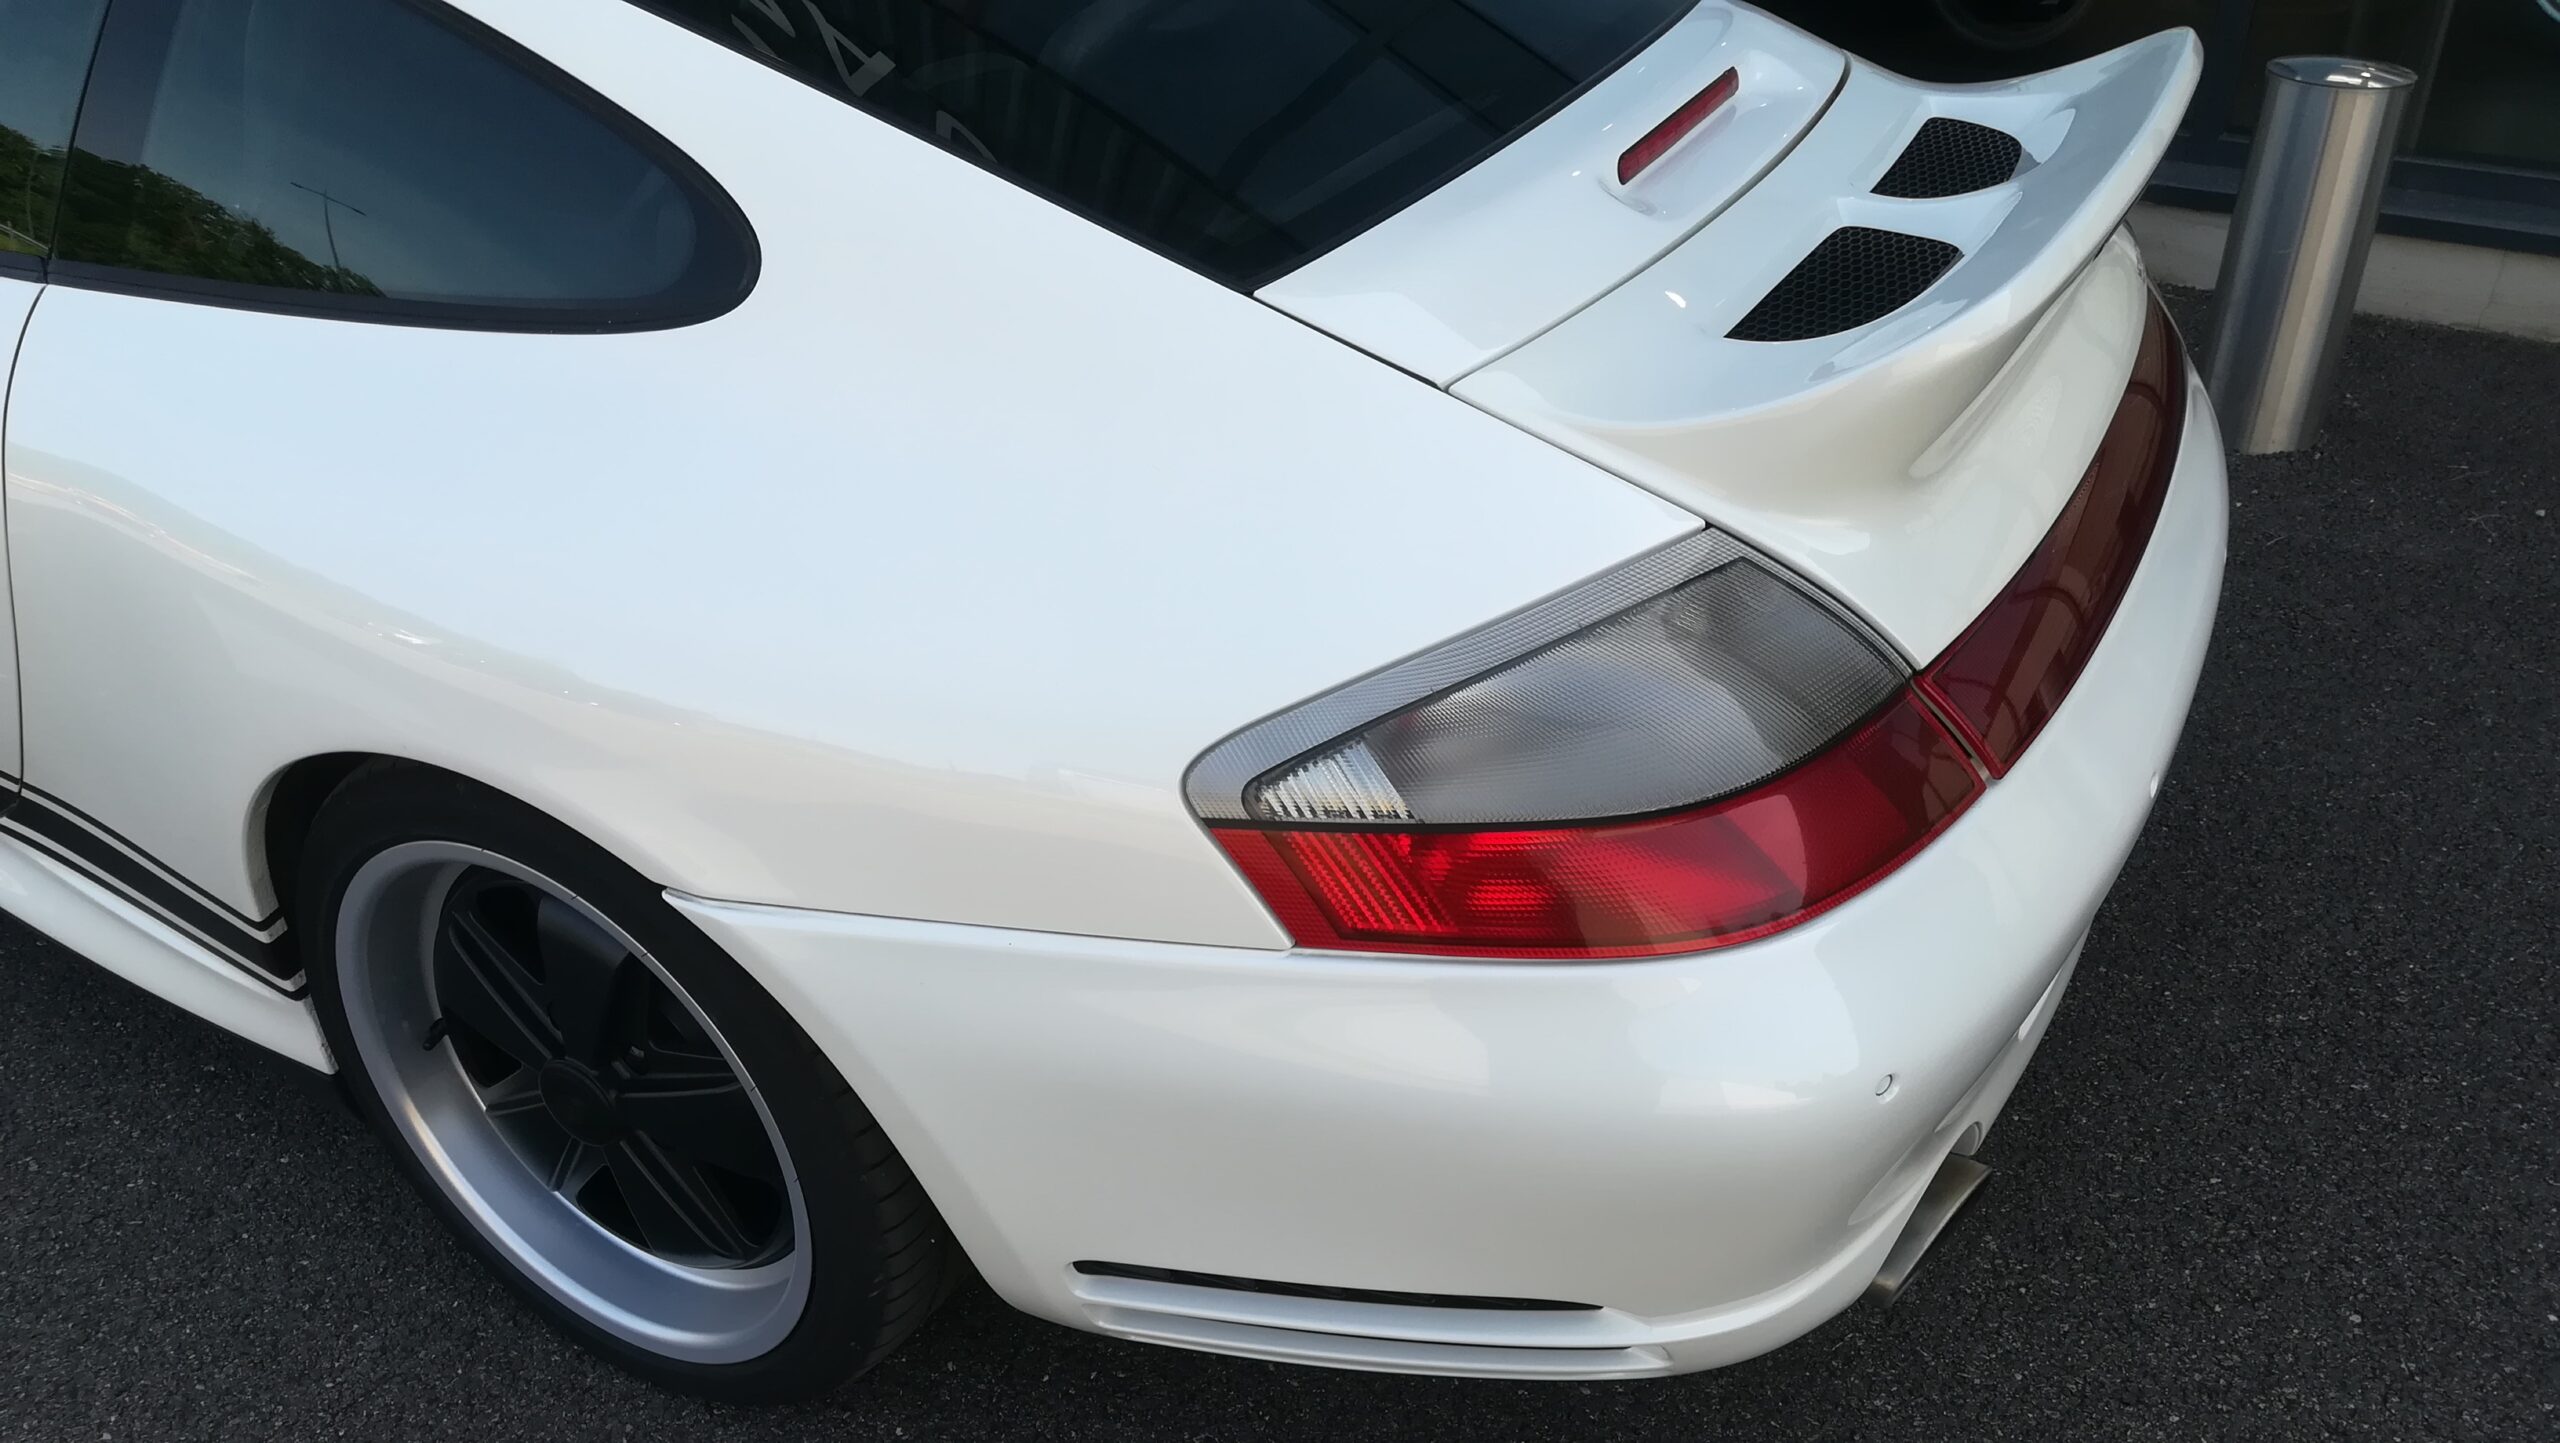 Porsche 996 4S 3L6 Tiptronic à vendre do'ccasion chez MCG Propulsion